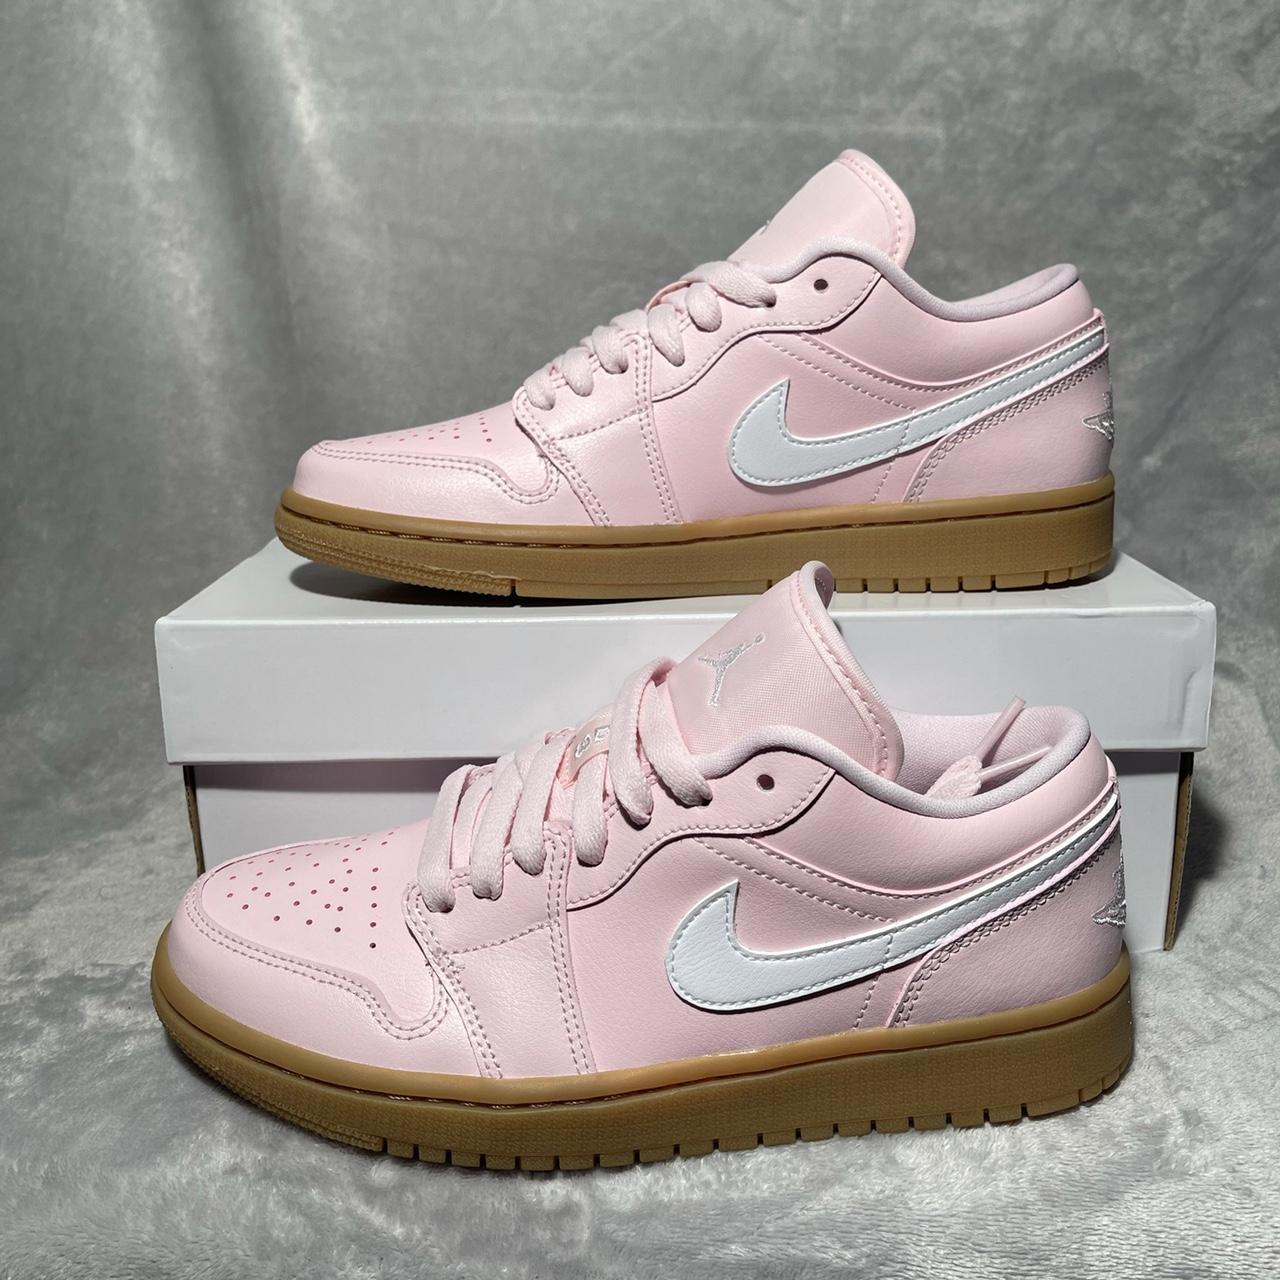 Nike Air Jordan 1 Low Arctic Pink Gum Colour:... - Depop